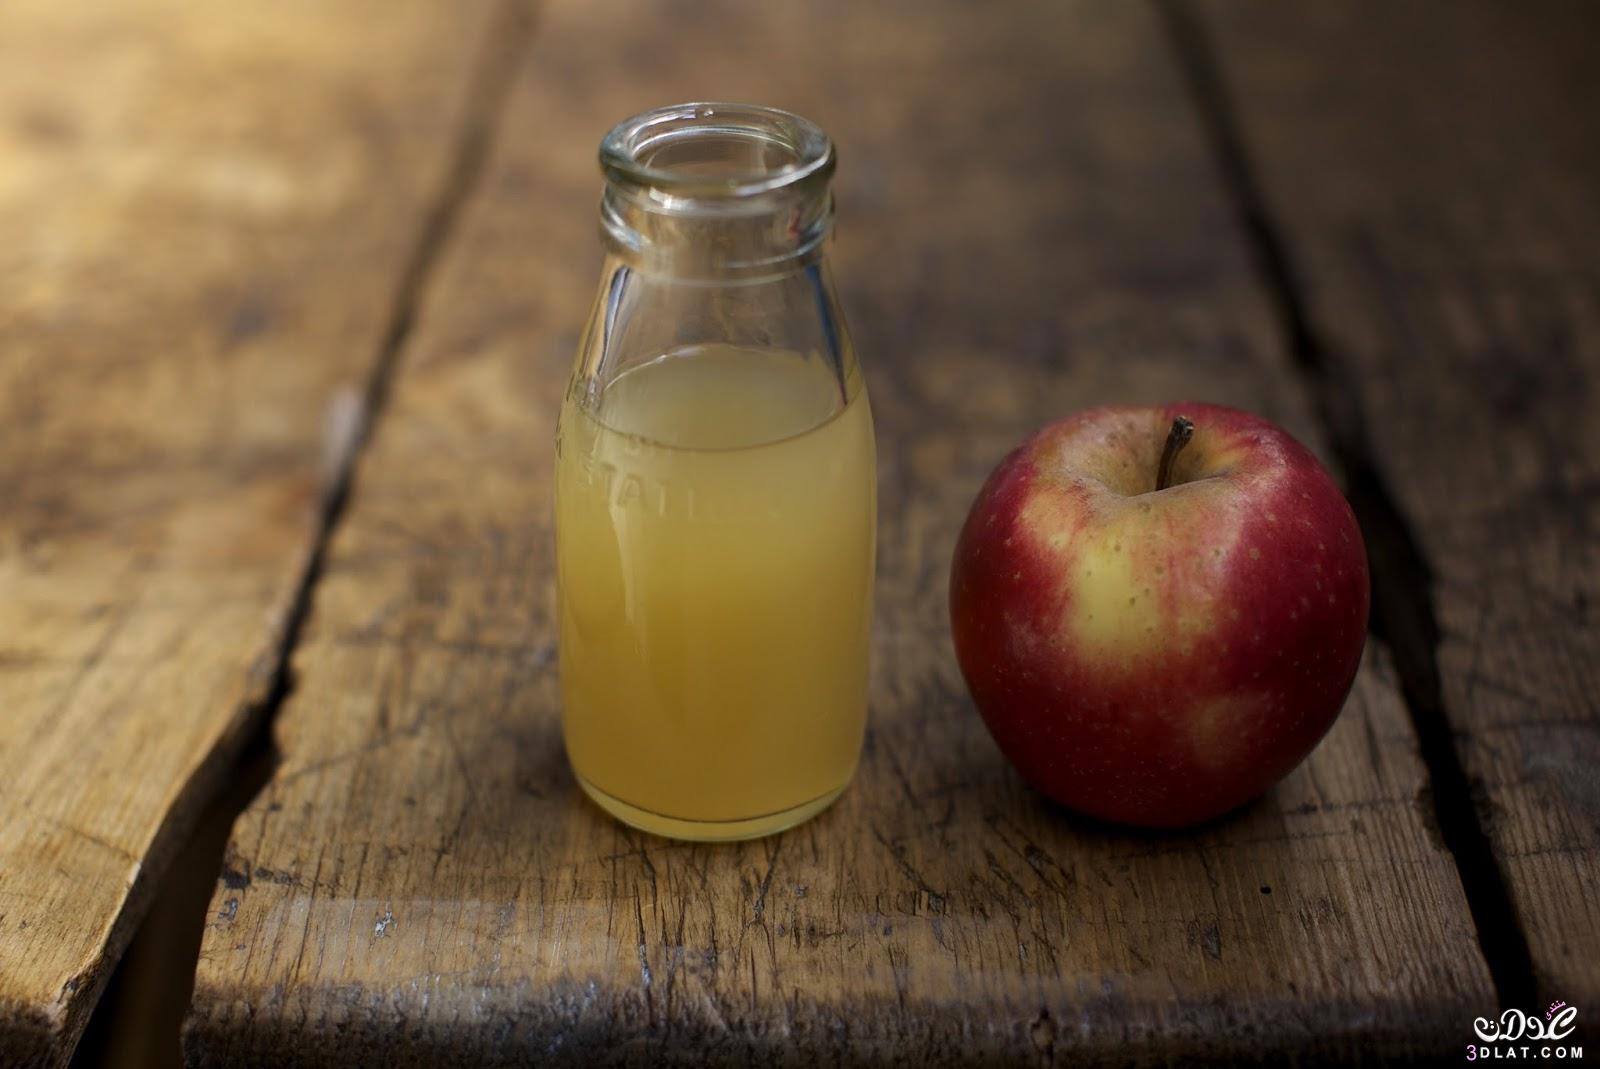 علاج الصداع بخل التفاح, طريقة طبيعية لعلاج الصداع بخل التفاح, طريقة مفيدة علاج الصداع